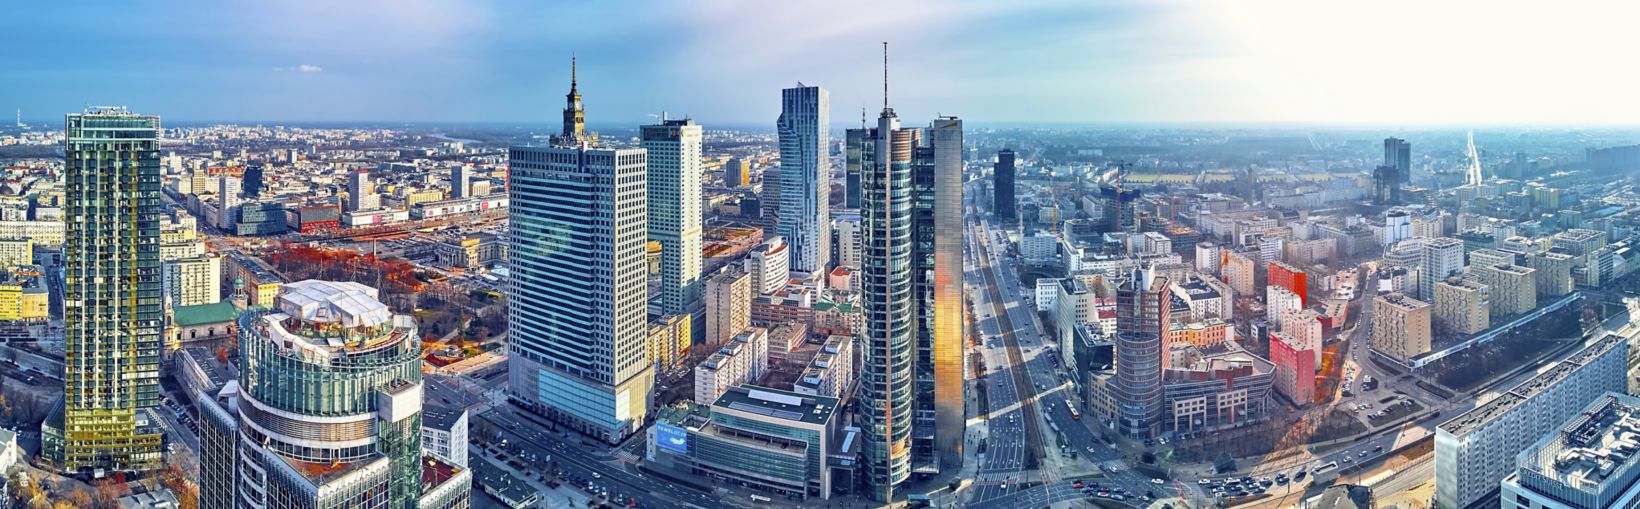 Nádherný panoramatický vzdušný pohled z dronu na moderní město Varšava